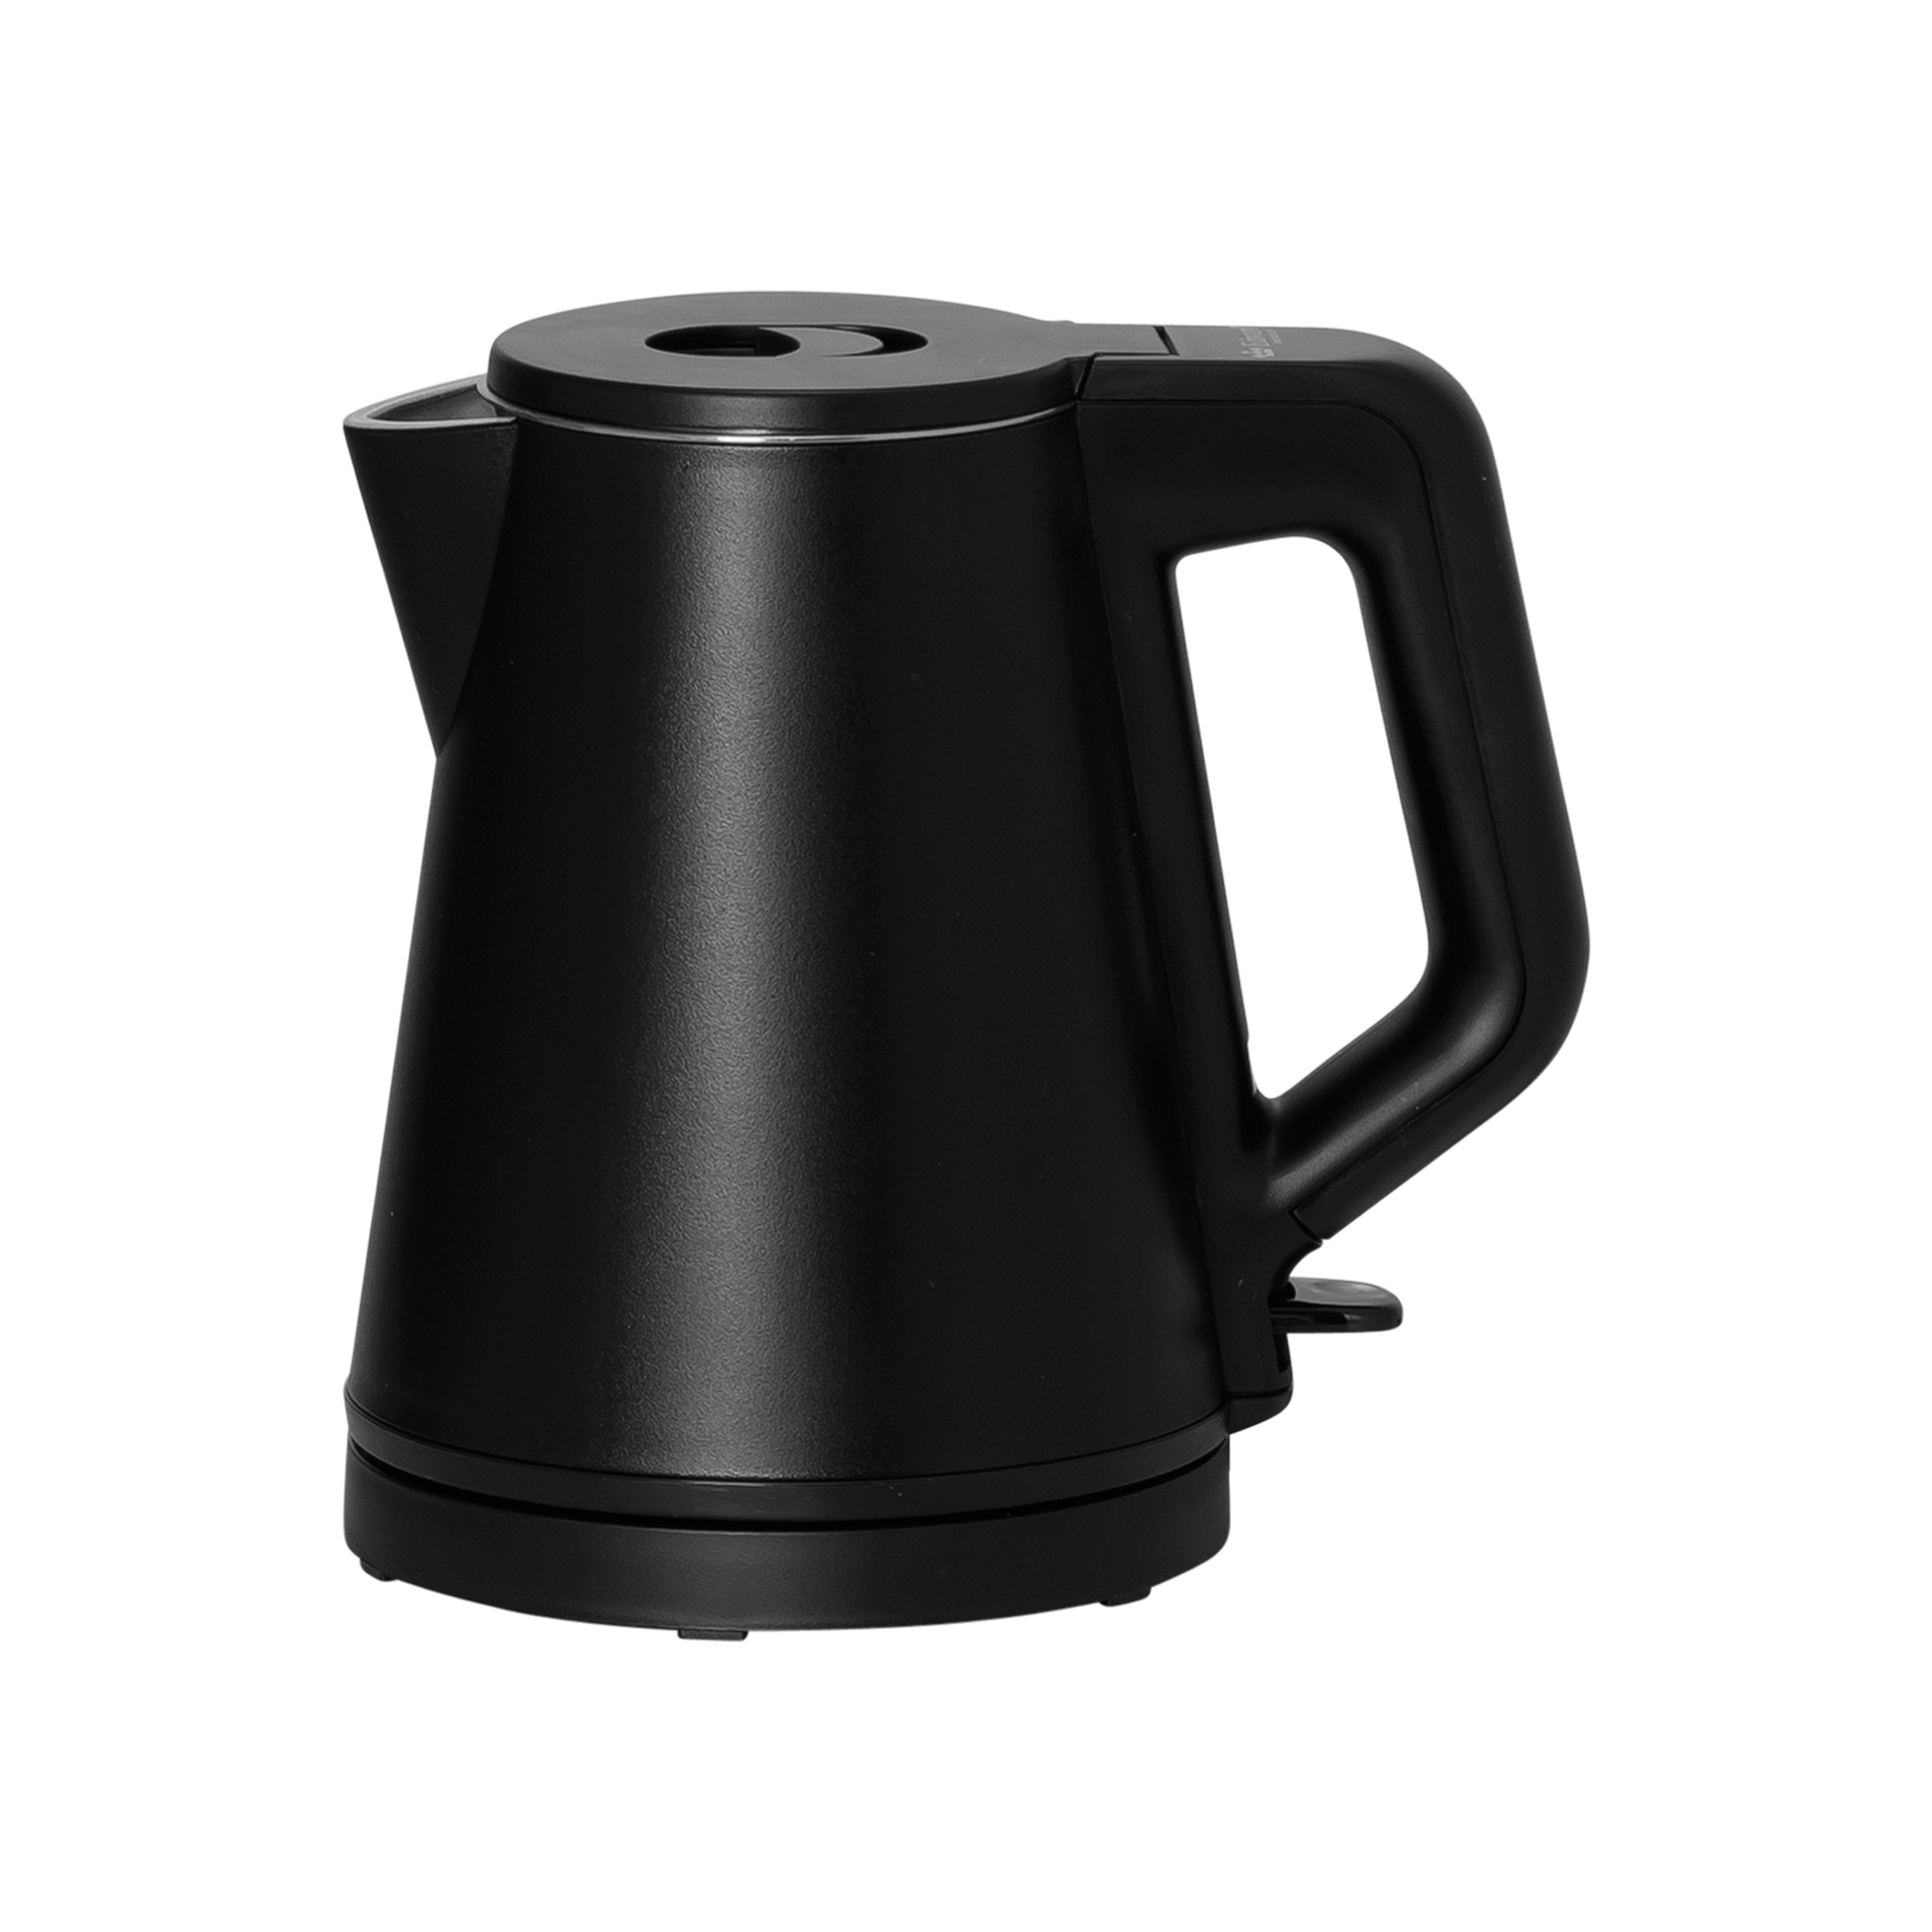 Water kettle 0,6 l, Black